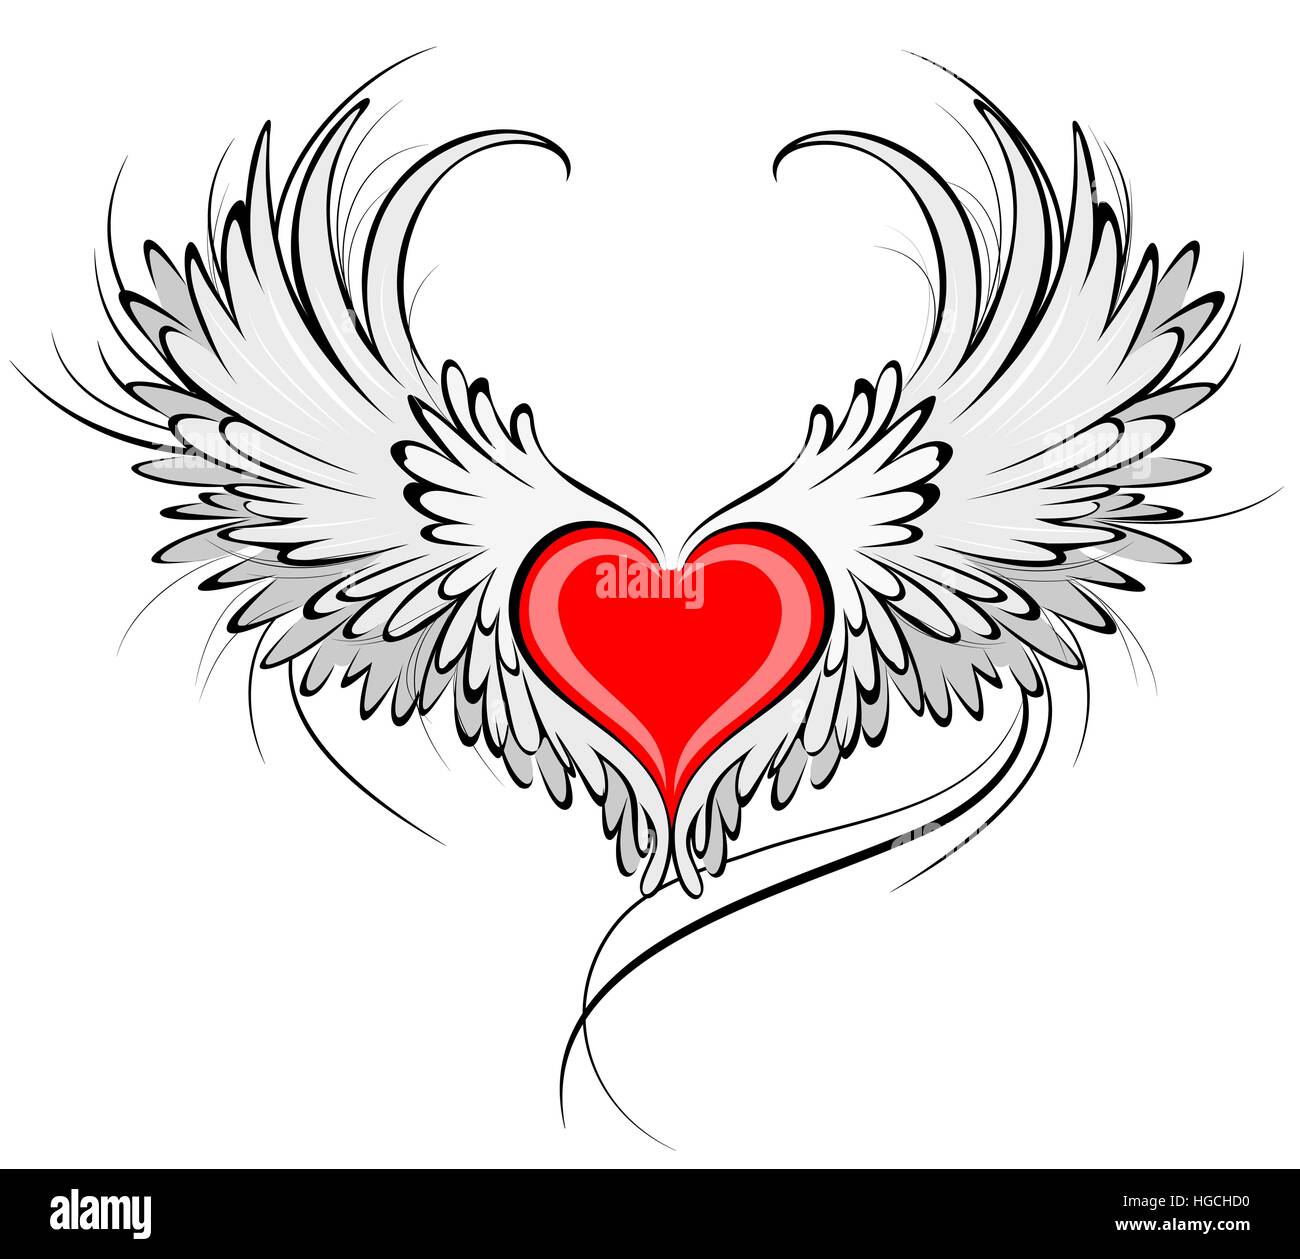 kunstvoll bemalte rotes Herz mit Engel Flügel grau, verziert mit schwarzen glatte Kontur. Stock Vektor